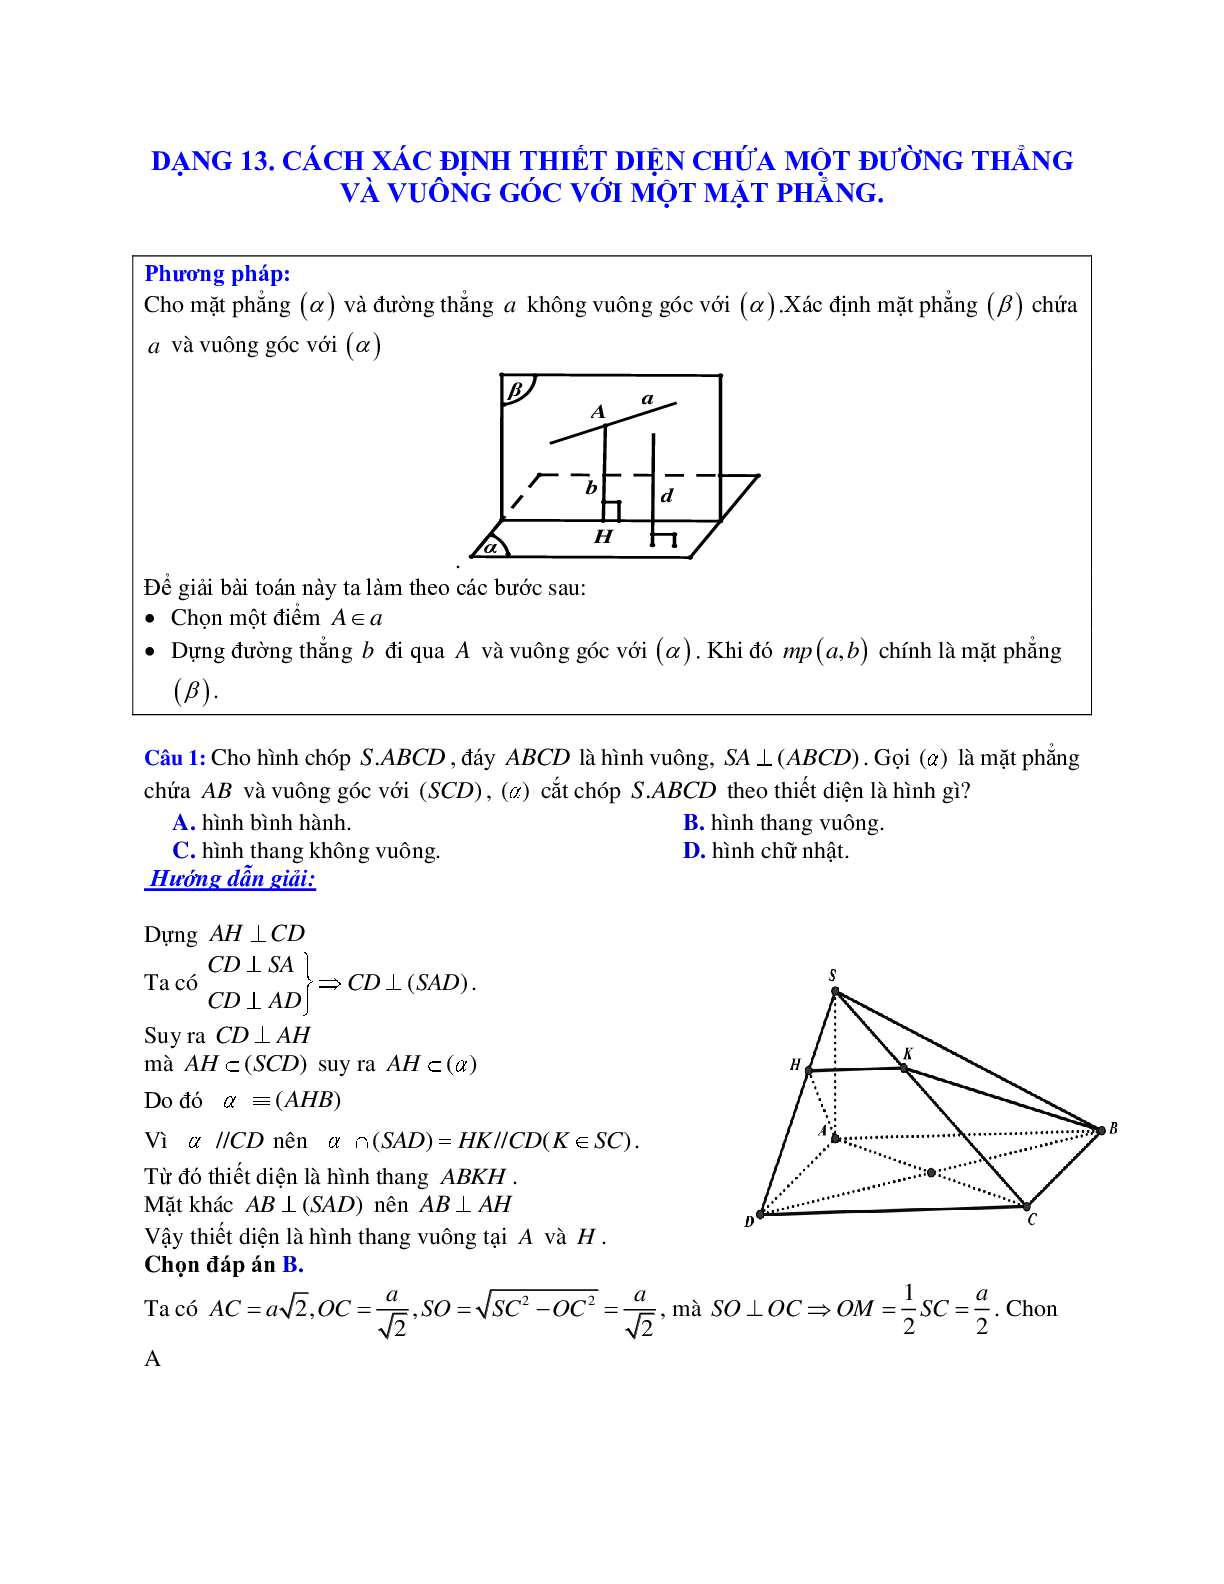 Phương pháp giải và bài tập về Cách xác định thiết diện chứa một đường thẳng và vuông góc với một mặt phẳng có đáp án (trang 1)